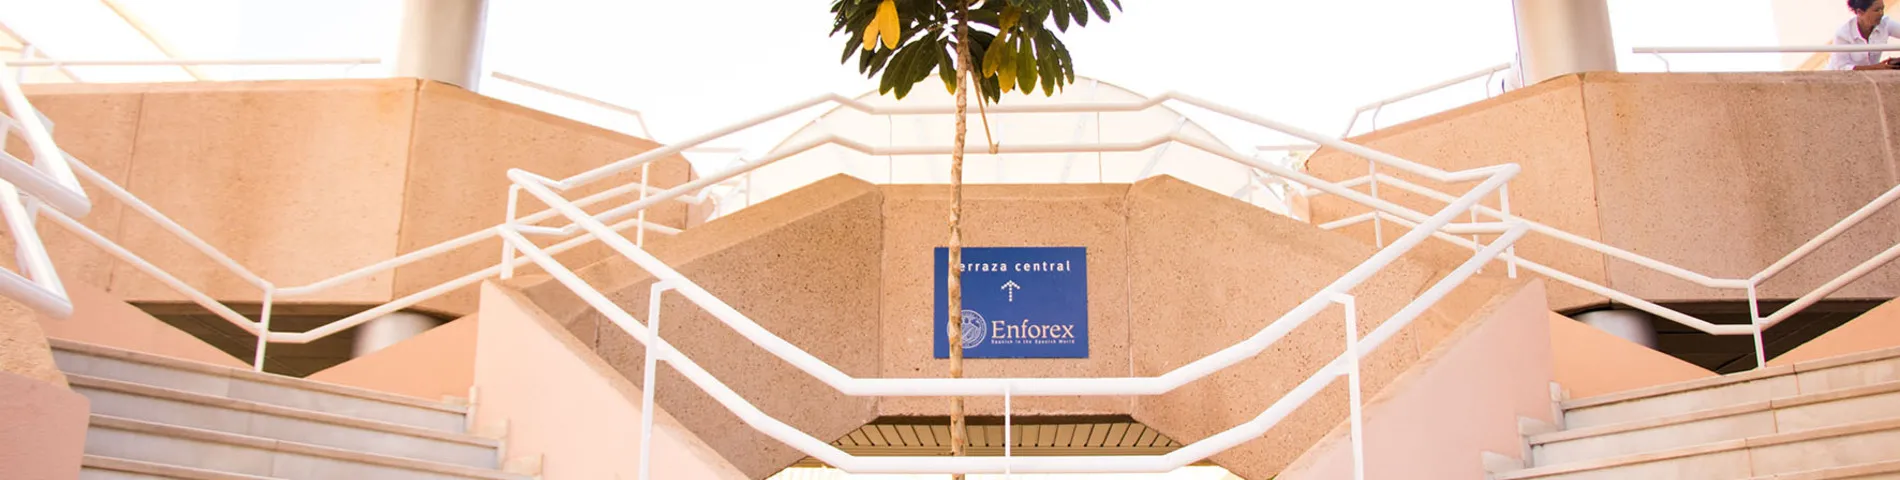 Enforex International Summer Centre - Centro画像1